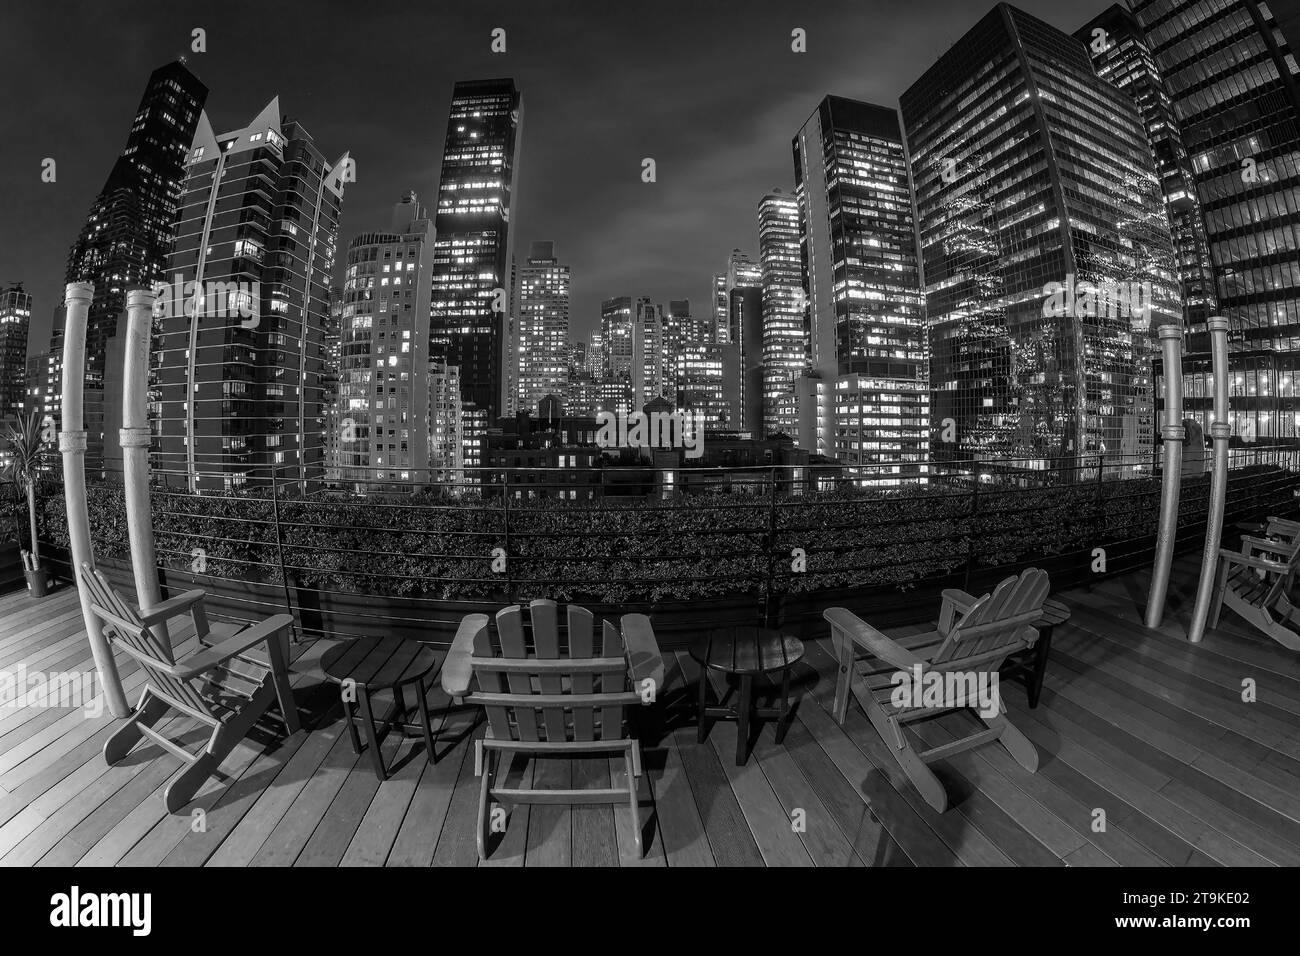 NEW YORK, USA - 10. MÄRZ 2020: Nächtlicher Blick auf die Wolkenkratzer von Midtown Manhattan vom Dach eines Gebäudes in Schwarz-weiß. Stockfoto